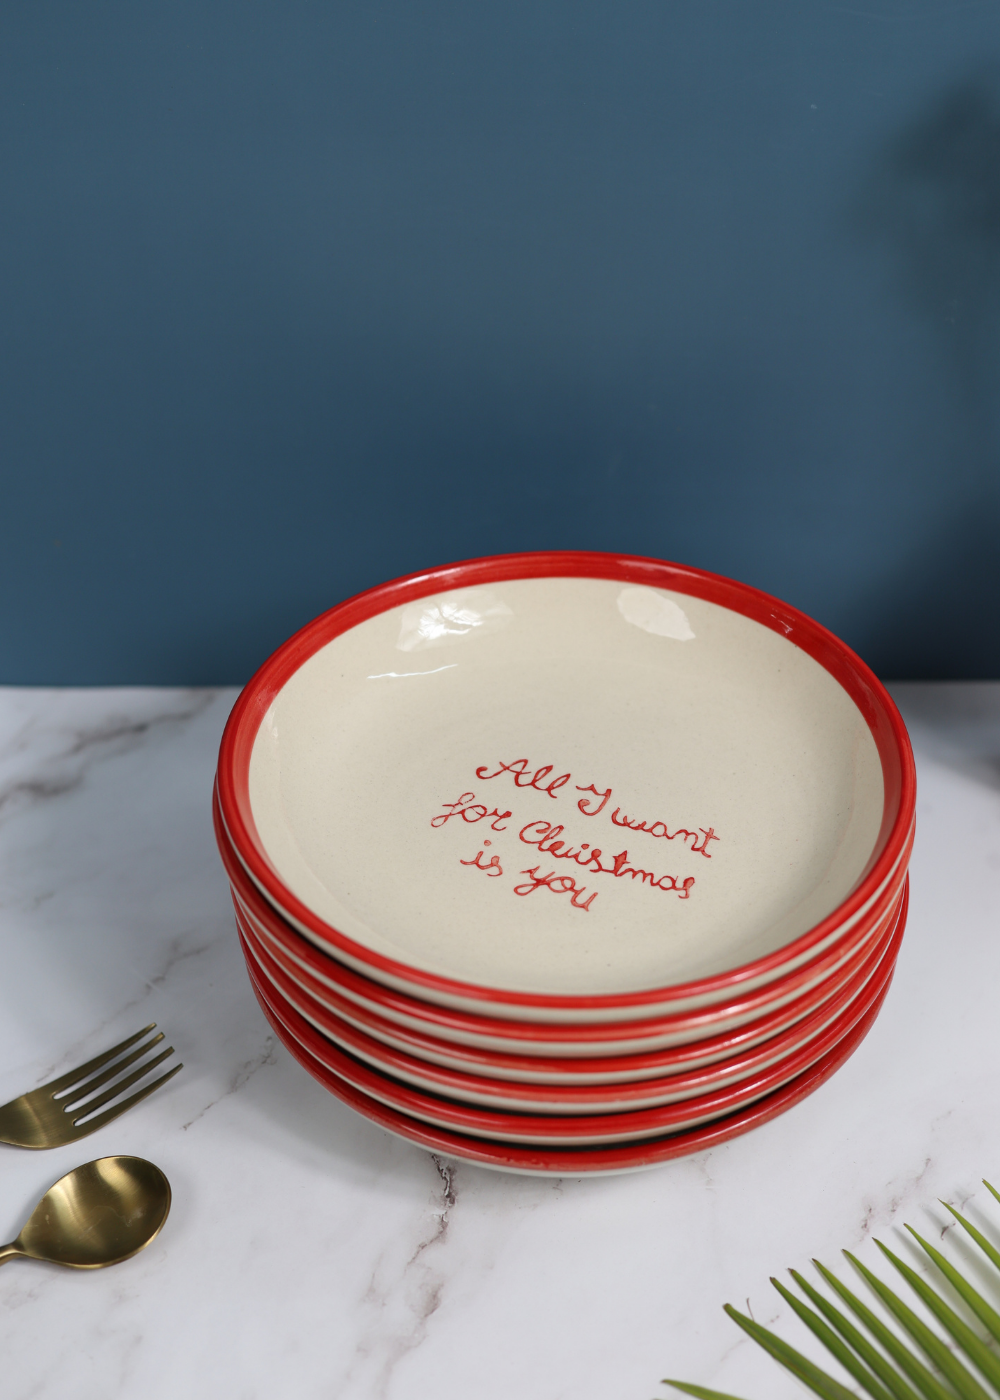 Handmade ceramic quoted pasta plates